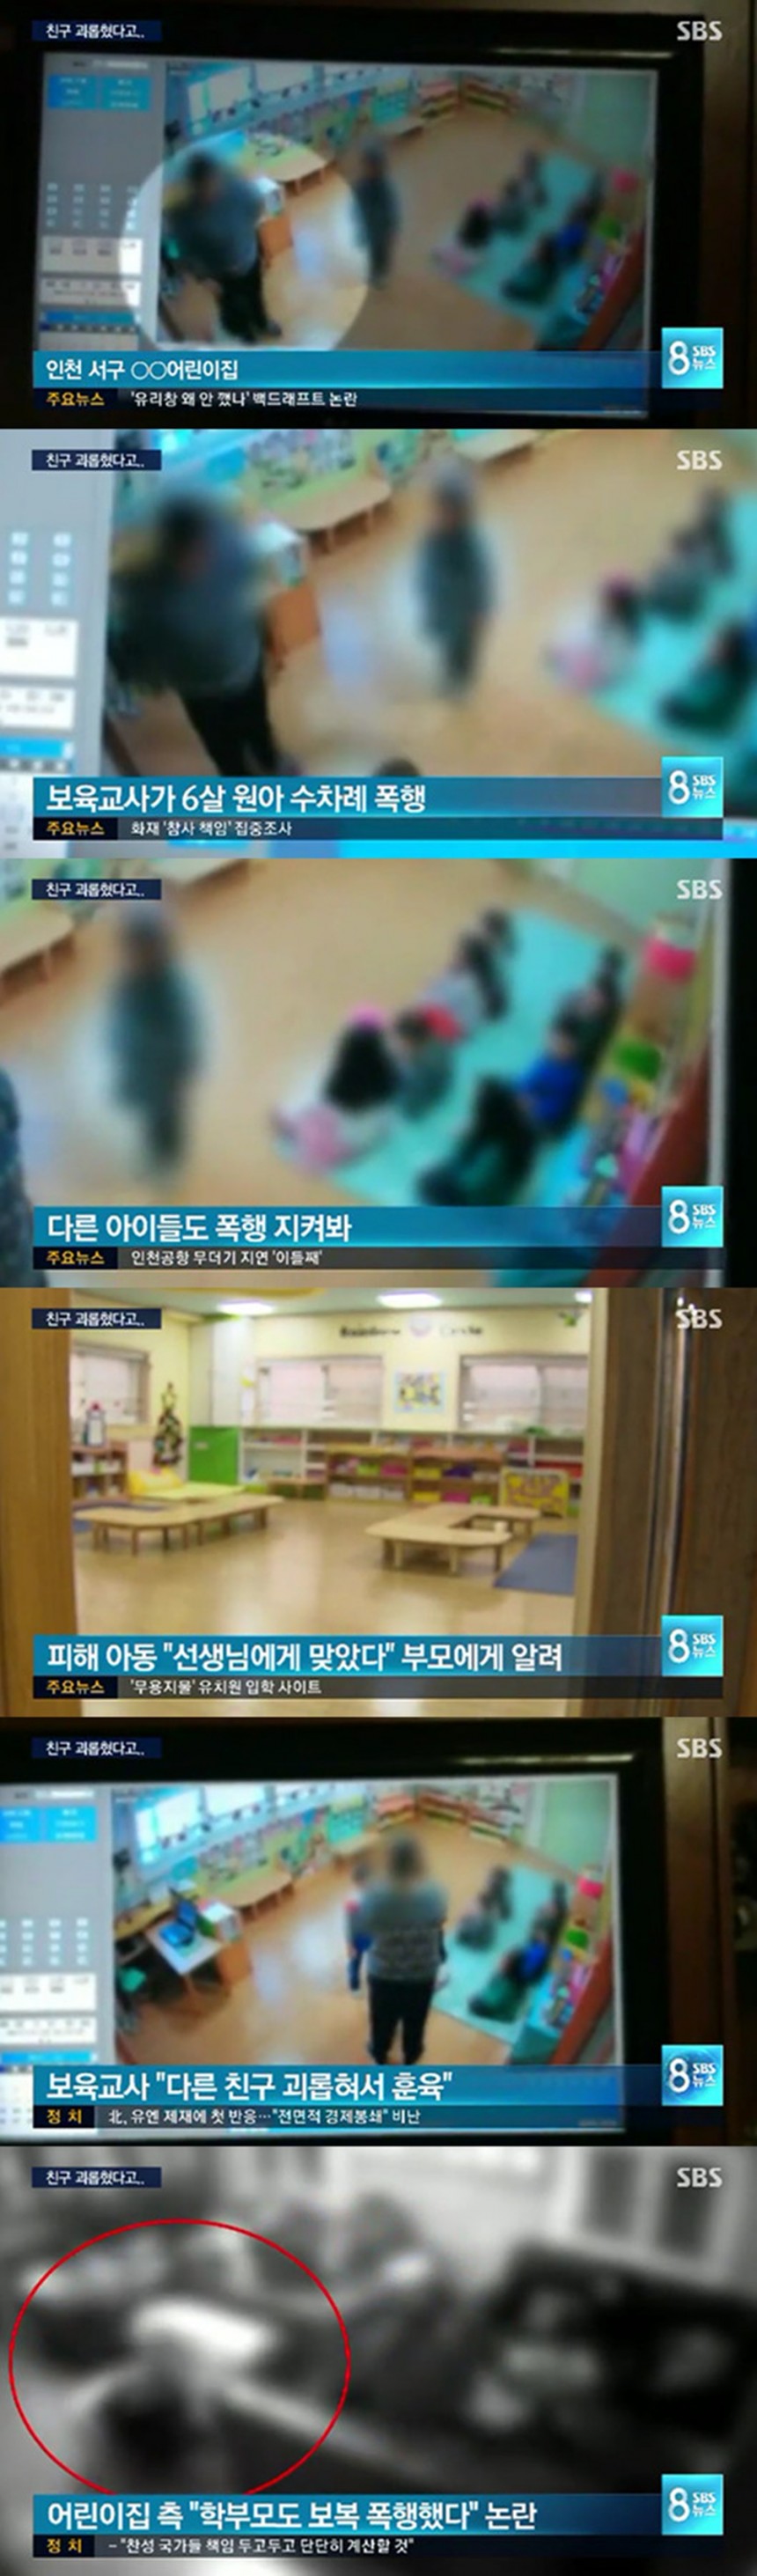 인천 어린이집 아동학대 / SBS ‘8 뉴스’ 방송 캡처